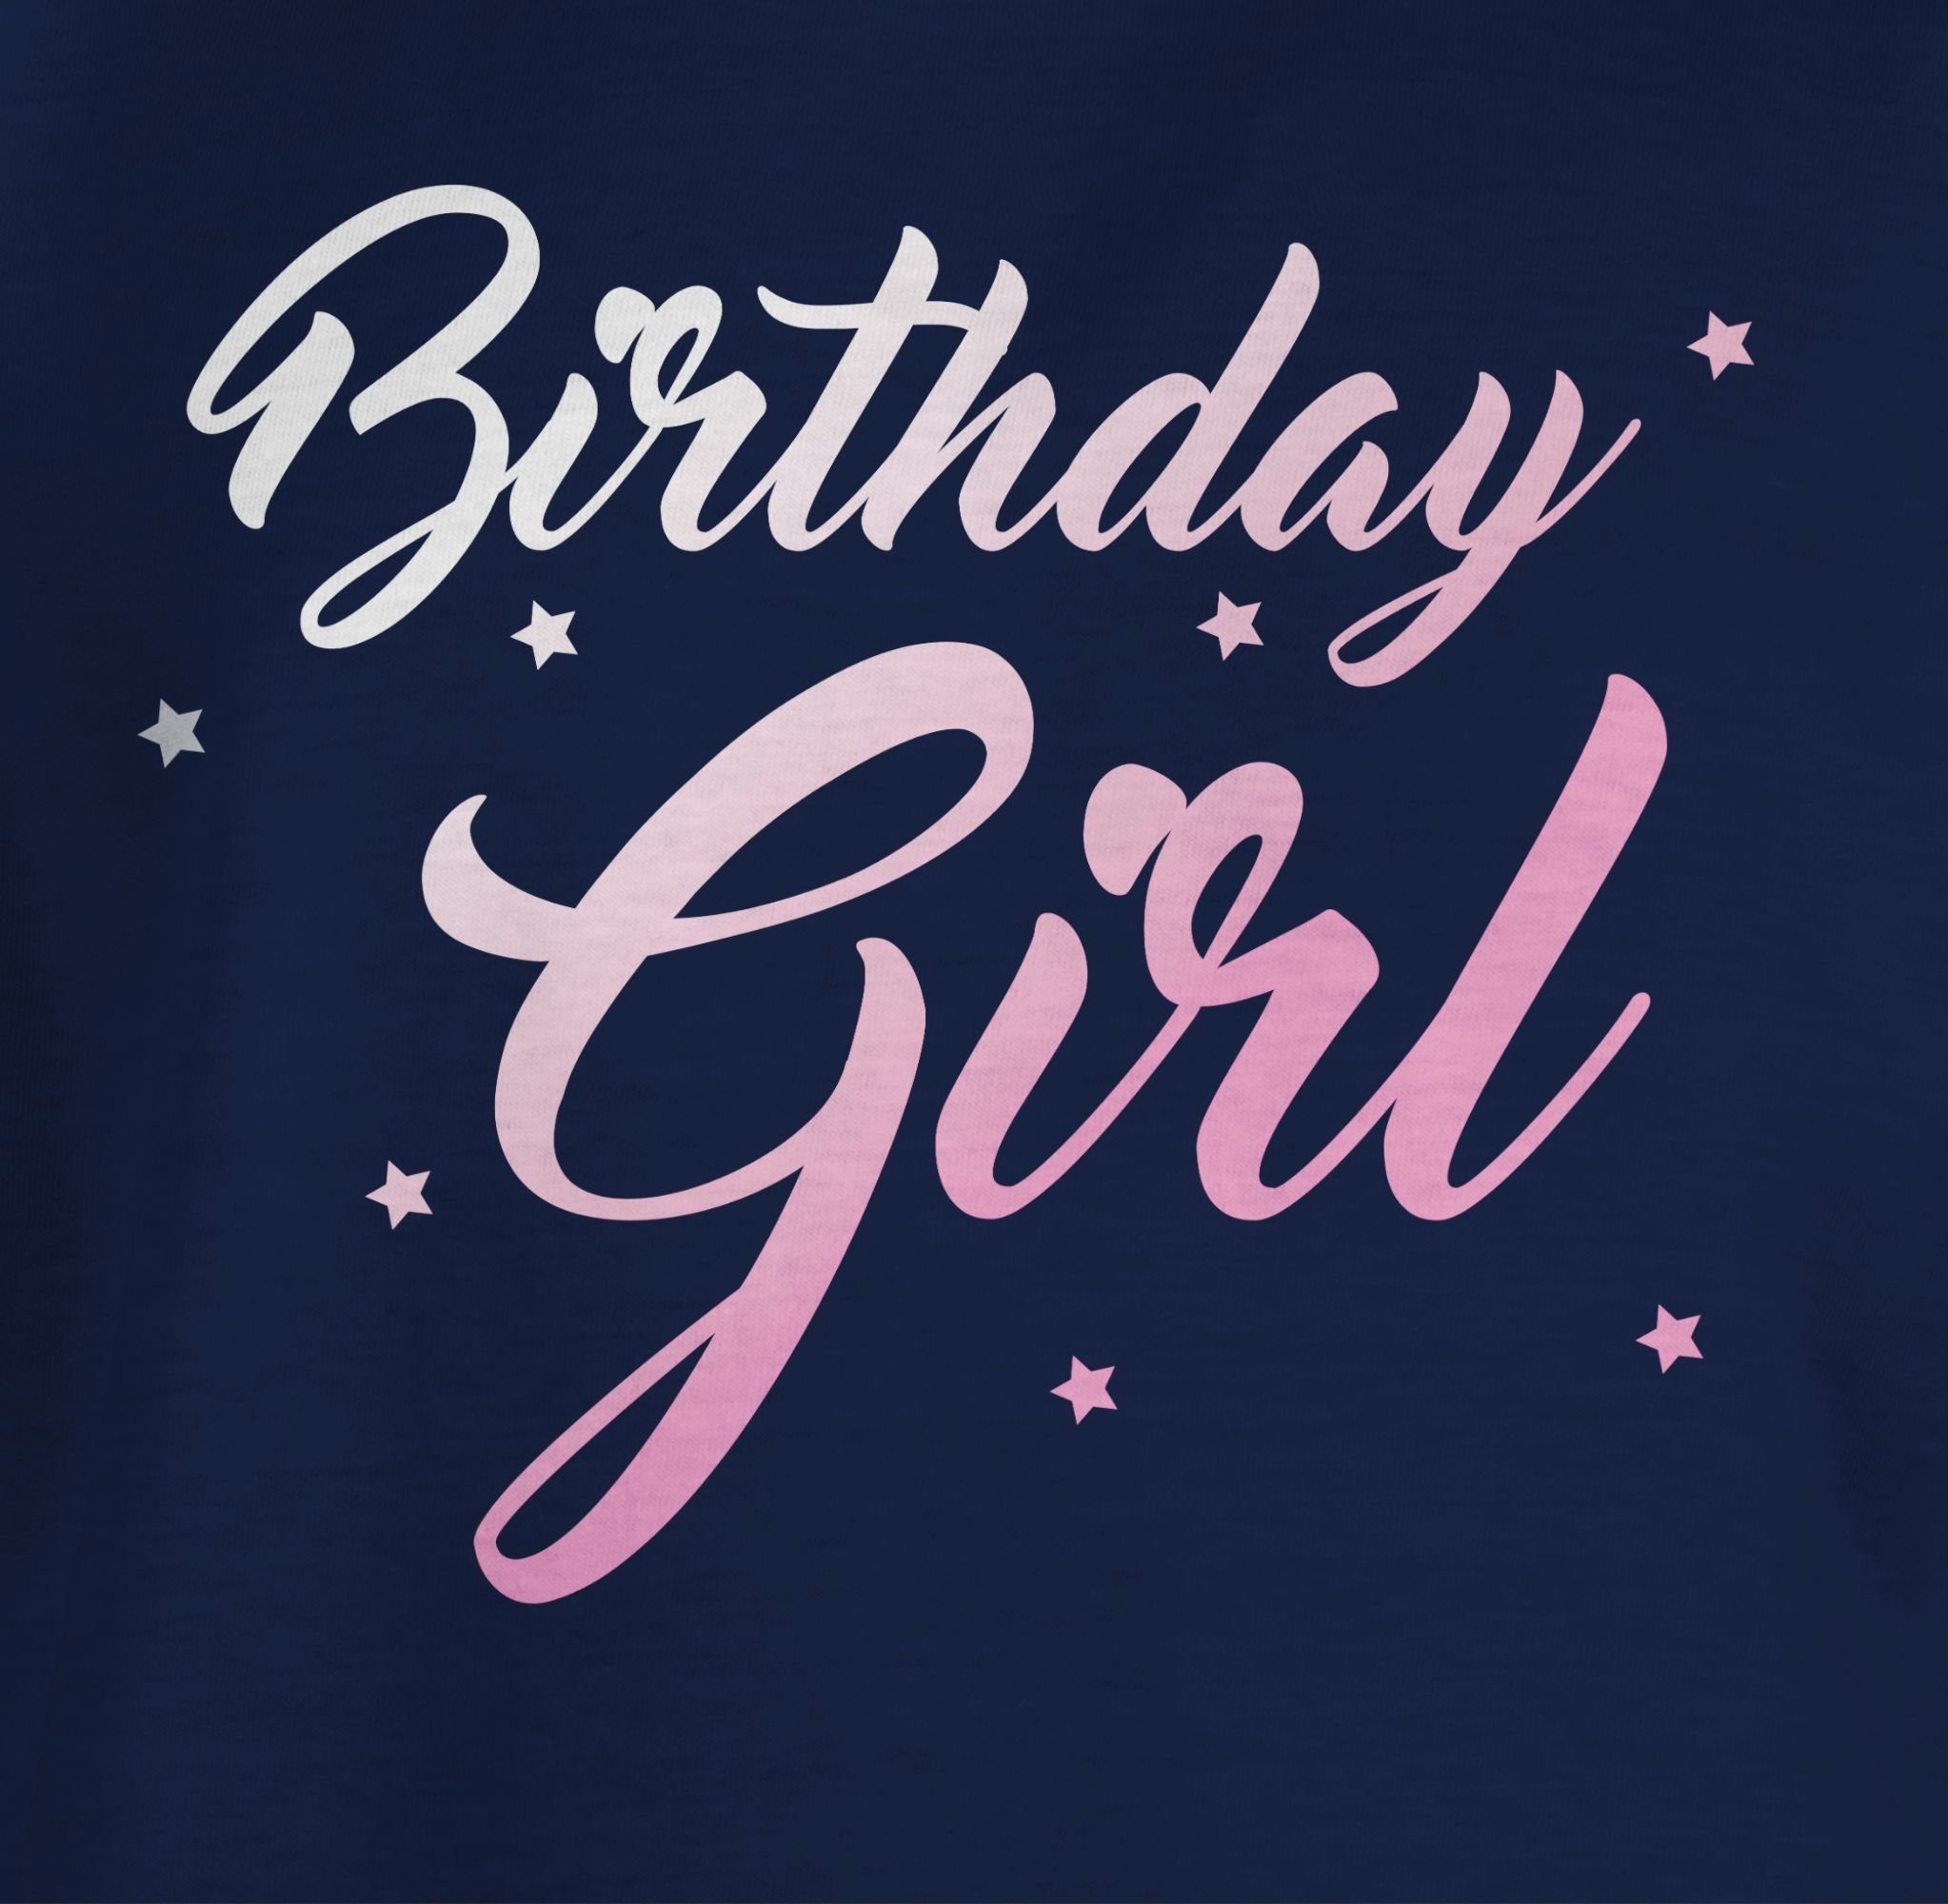 Geburtstag Kinder 2 Dunkelblau Girl Birthday Geschenk Shirtracer T-Shirt